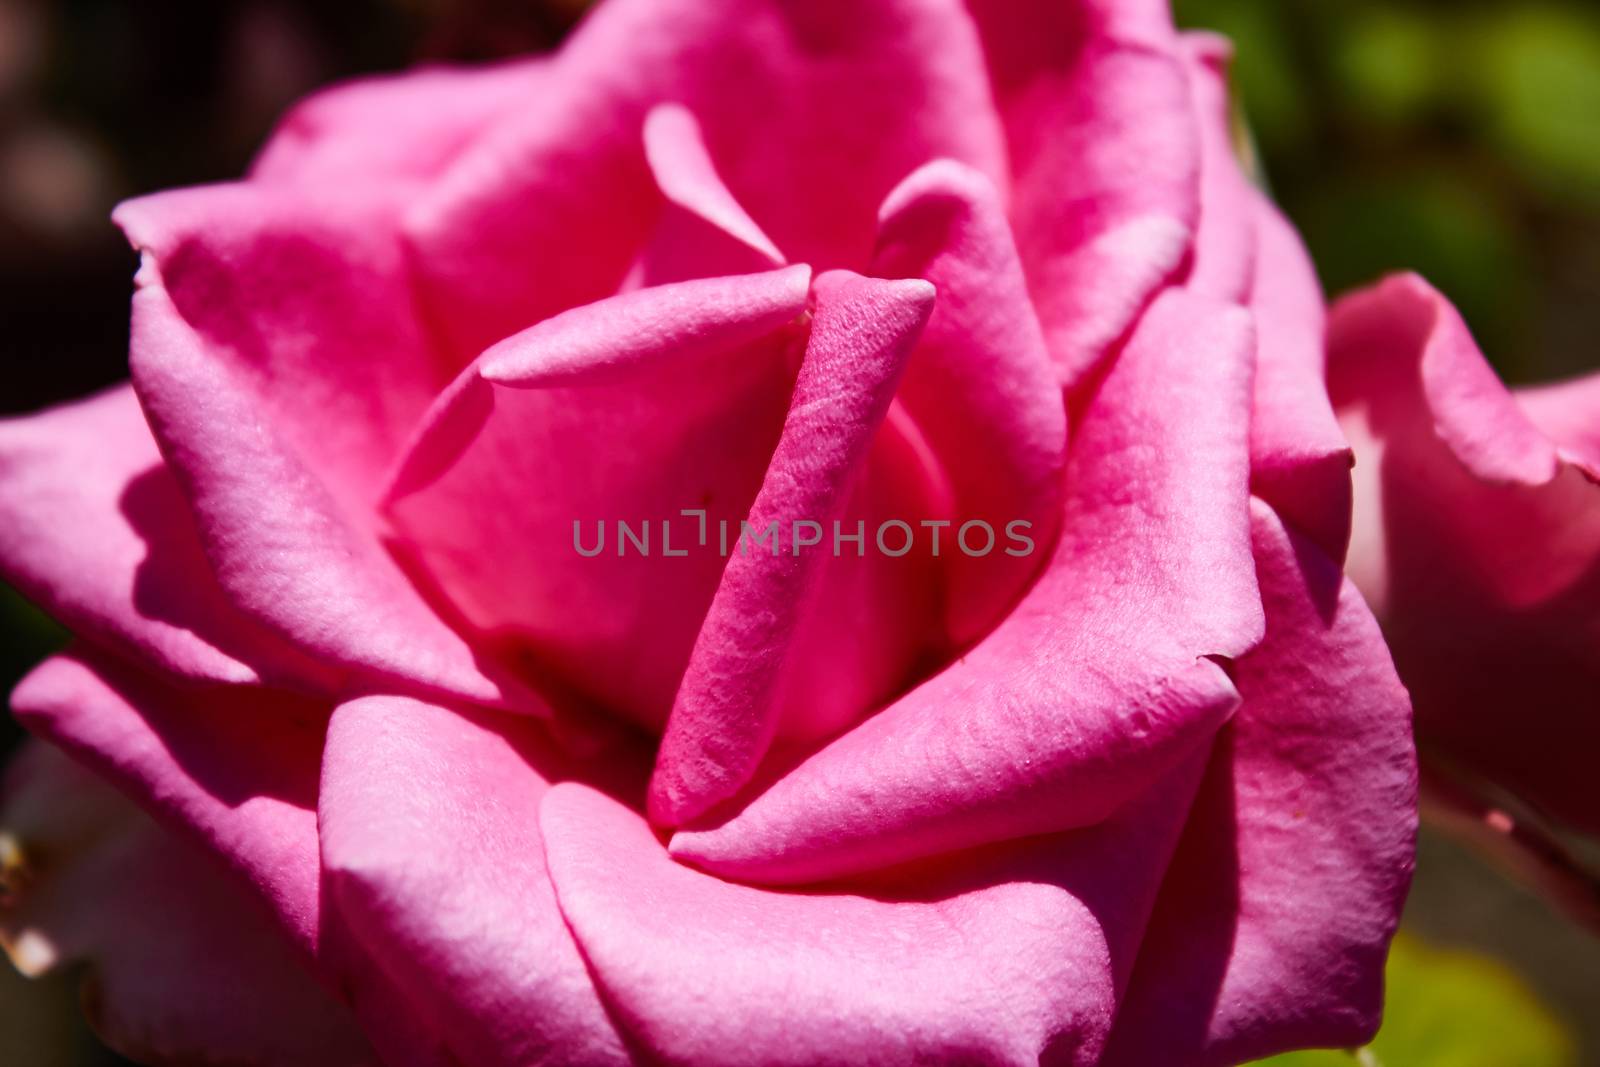 velvet pink Valentine rose by sarymsakov